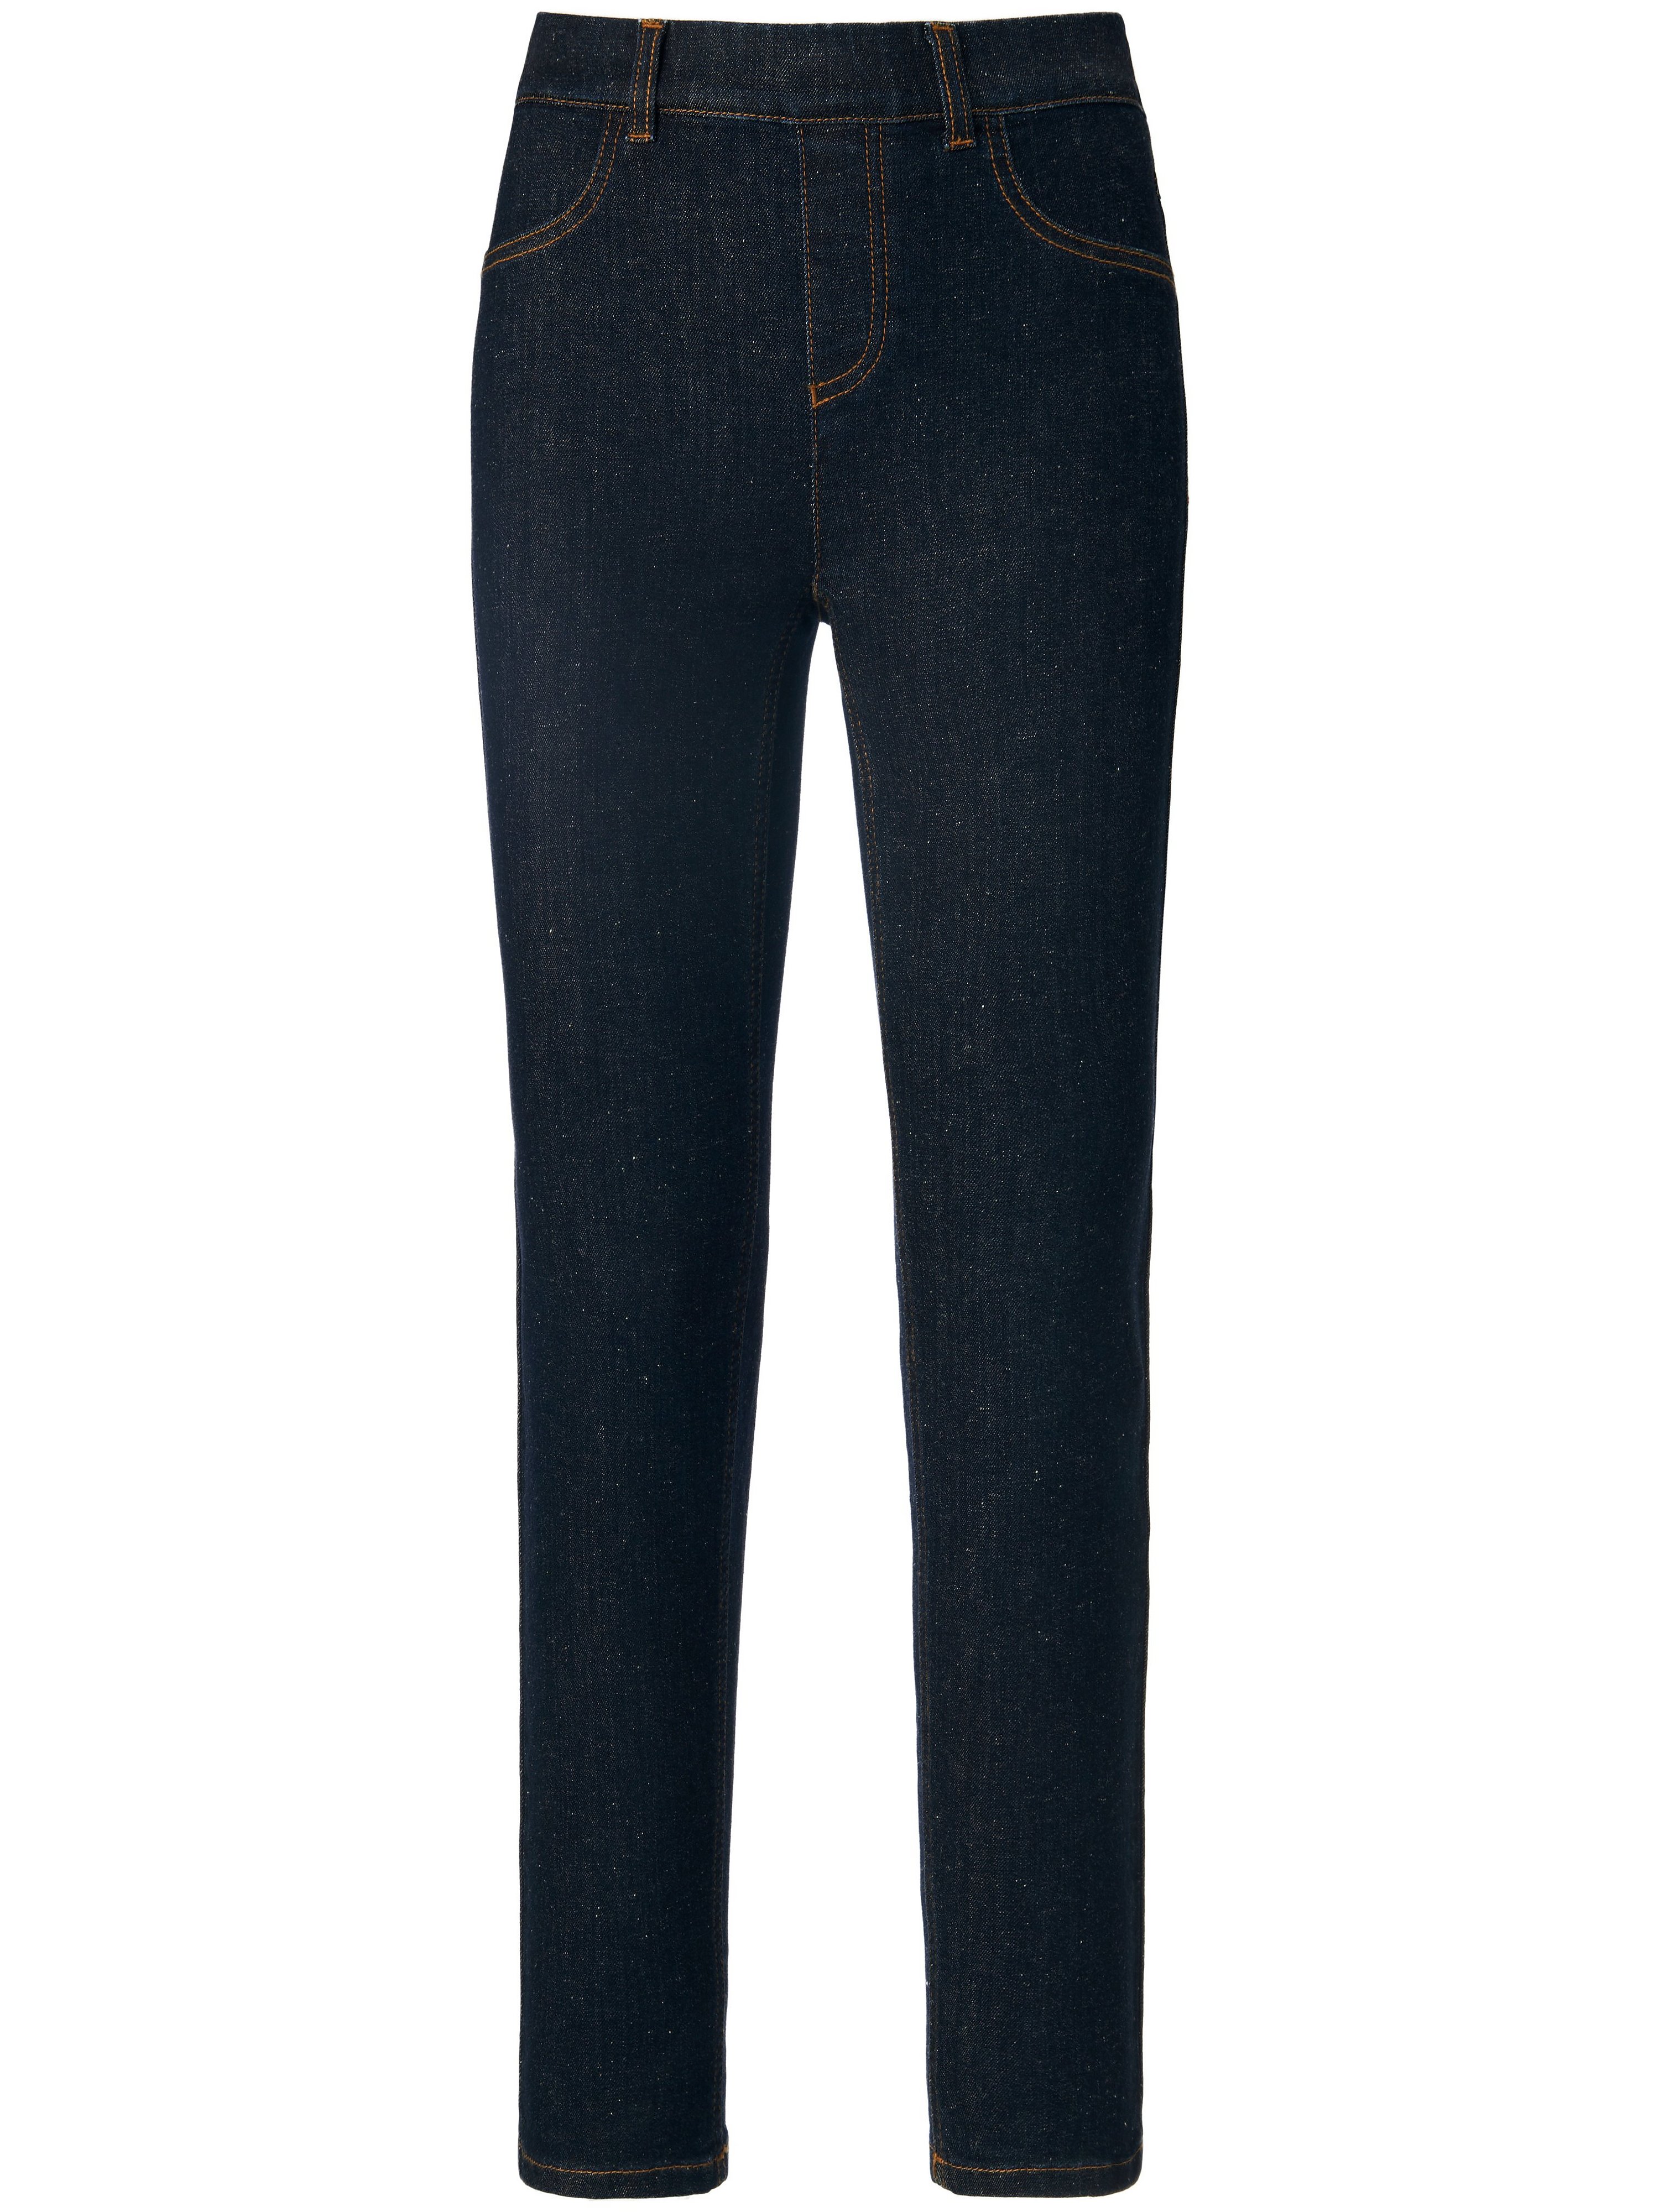 Le jean taille élastiquée avec faux zip  PETER HAHN PURE EDITION denim